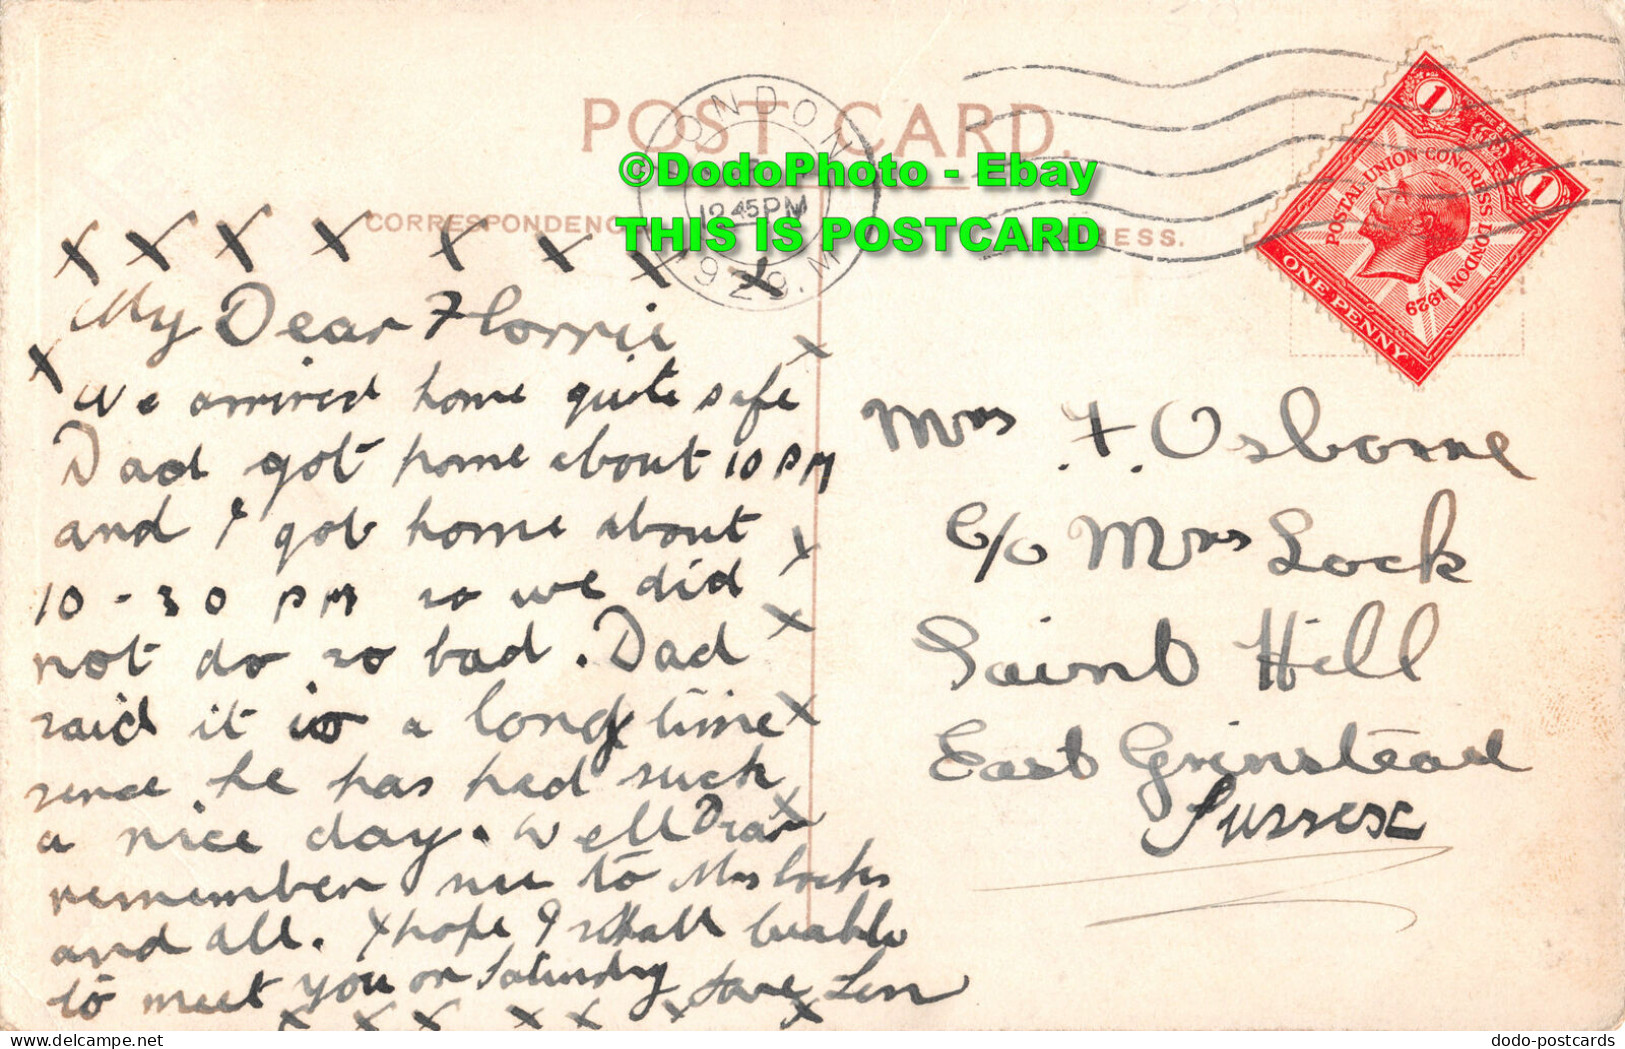 R347138 Eastbourne. Carpet Gardens. Postcard. 1929 - World